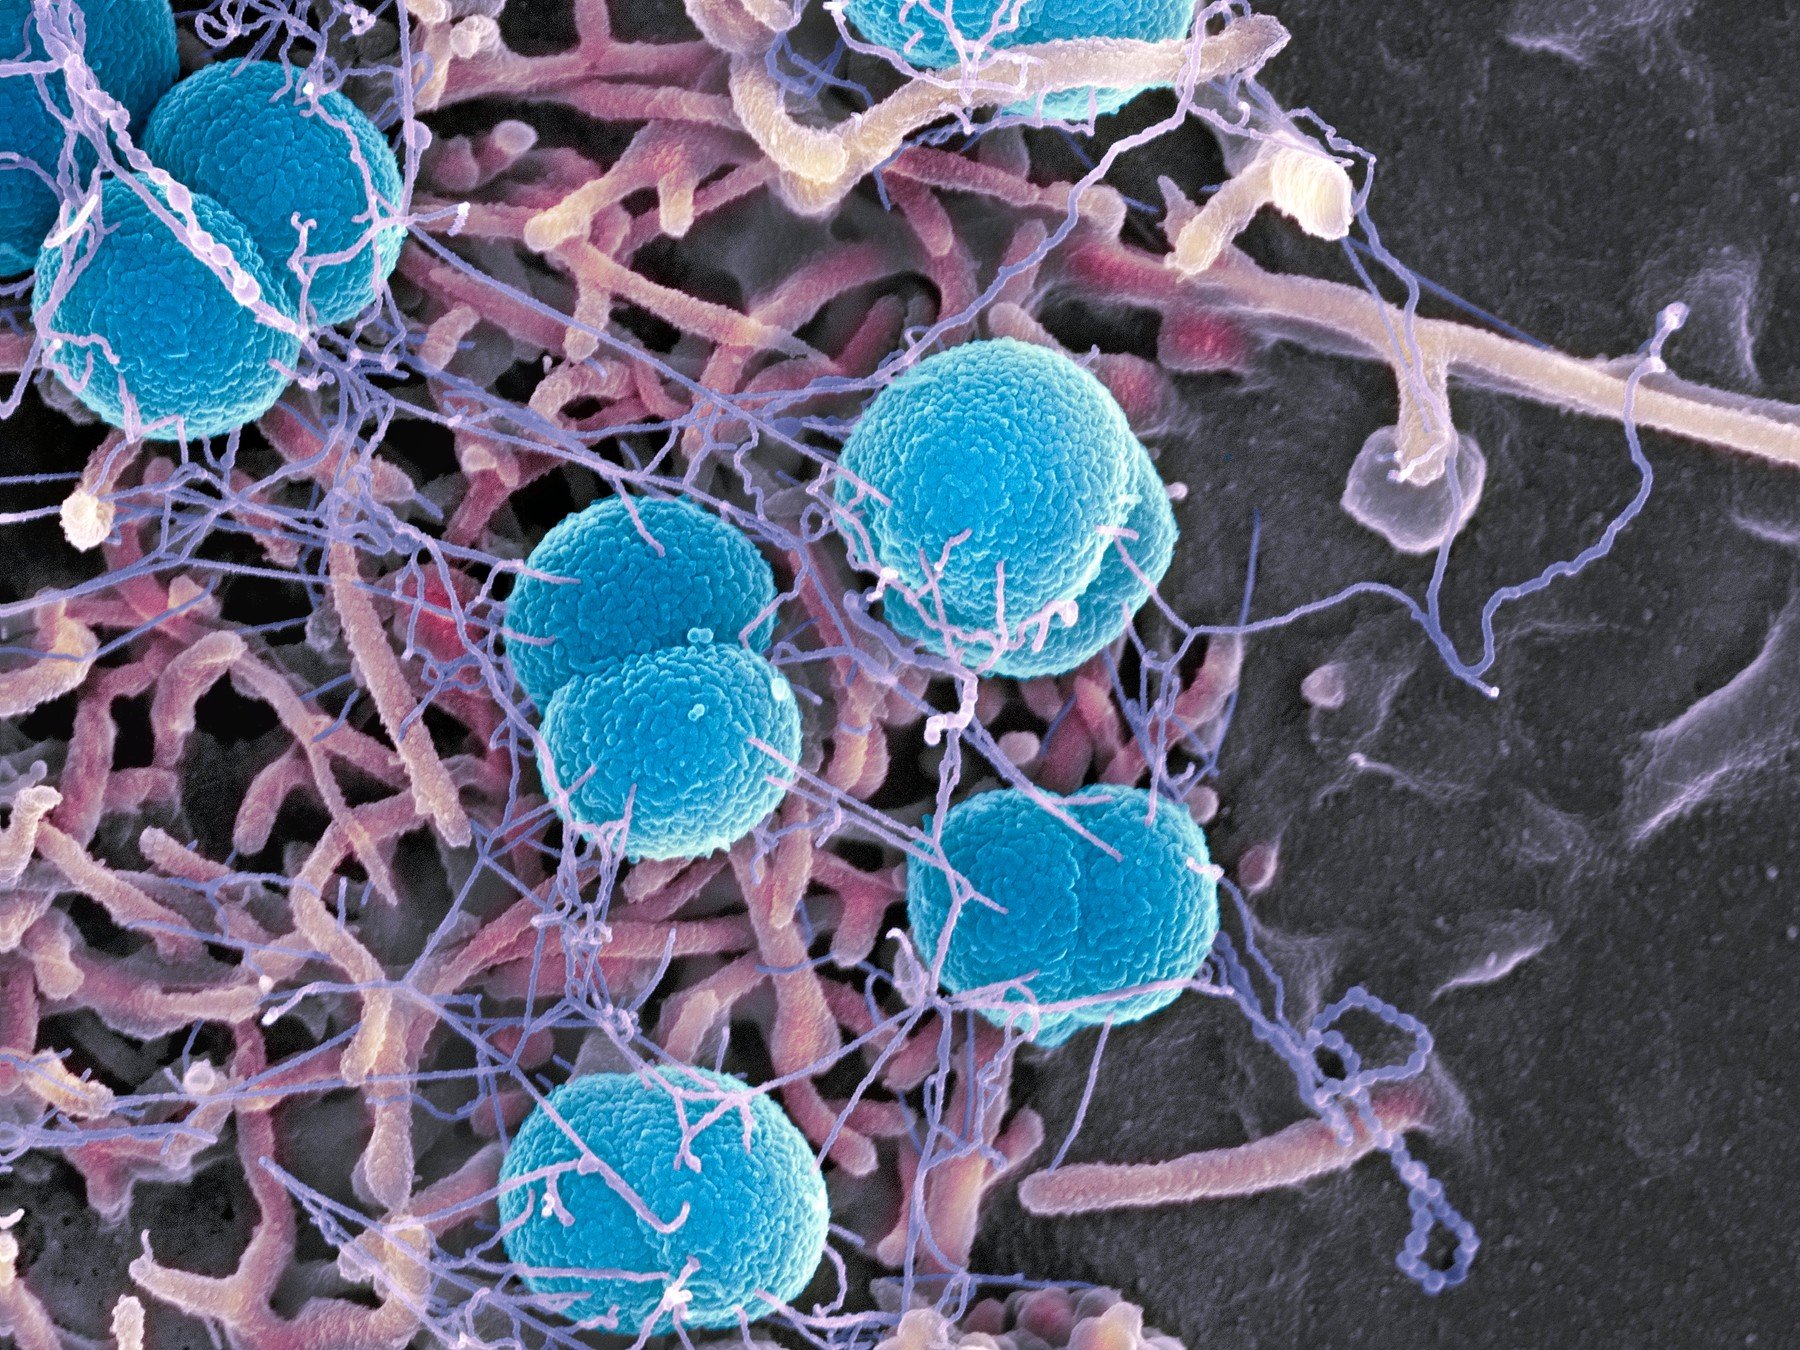 Obarvené bakterie meningokoka snímané elektronovým mikroskopem